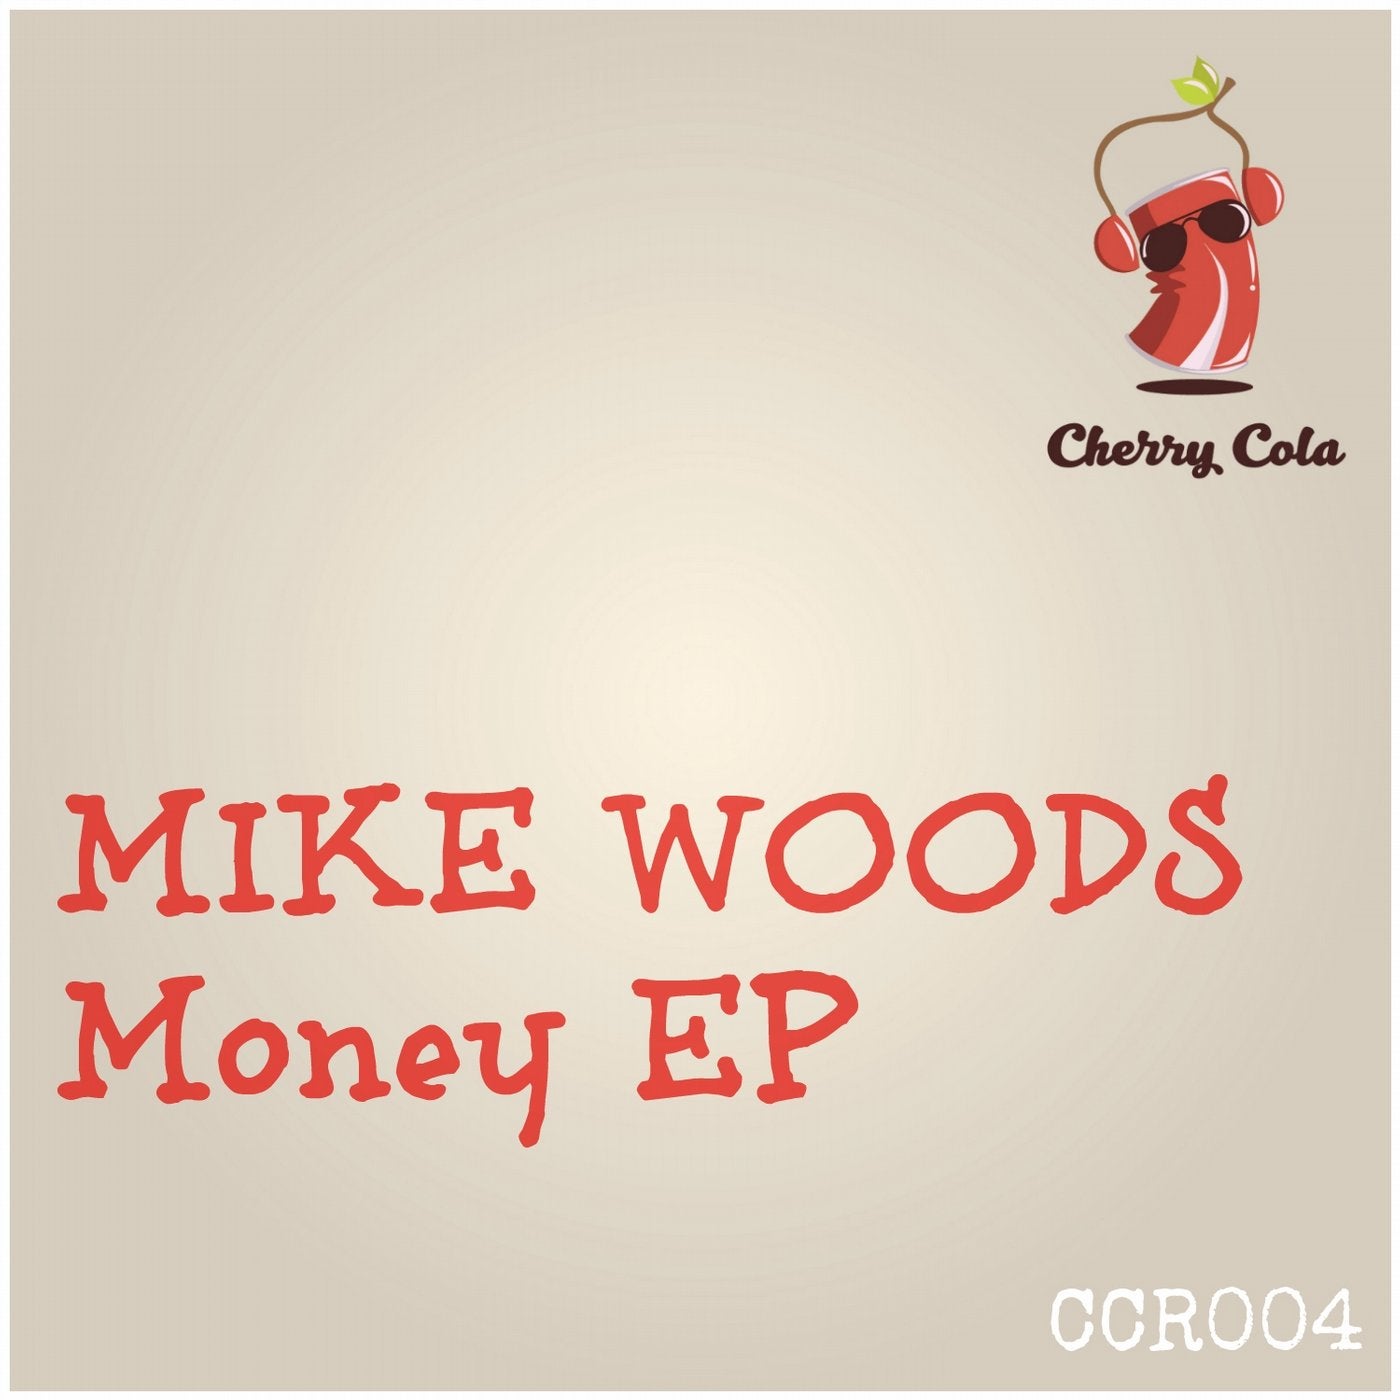 Money EP